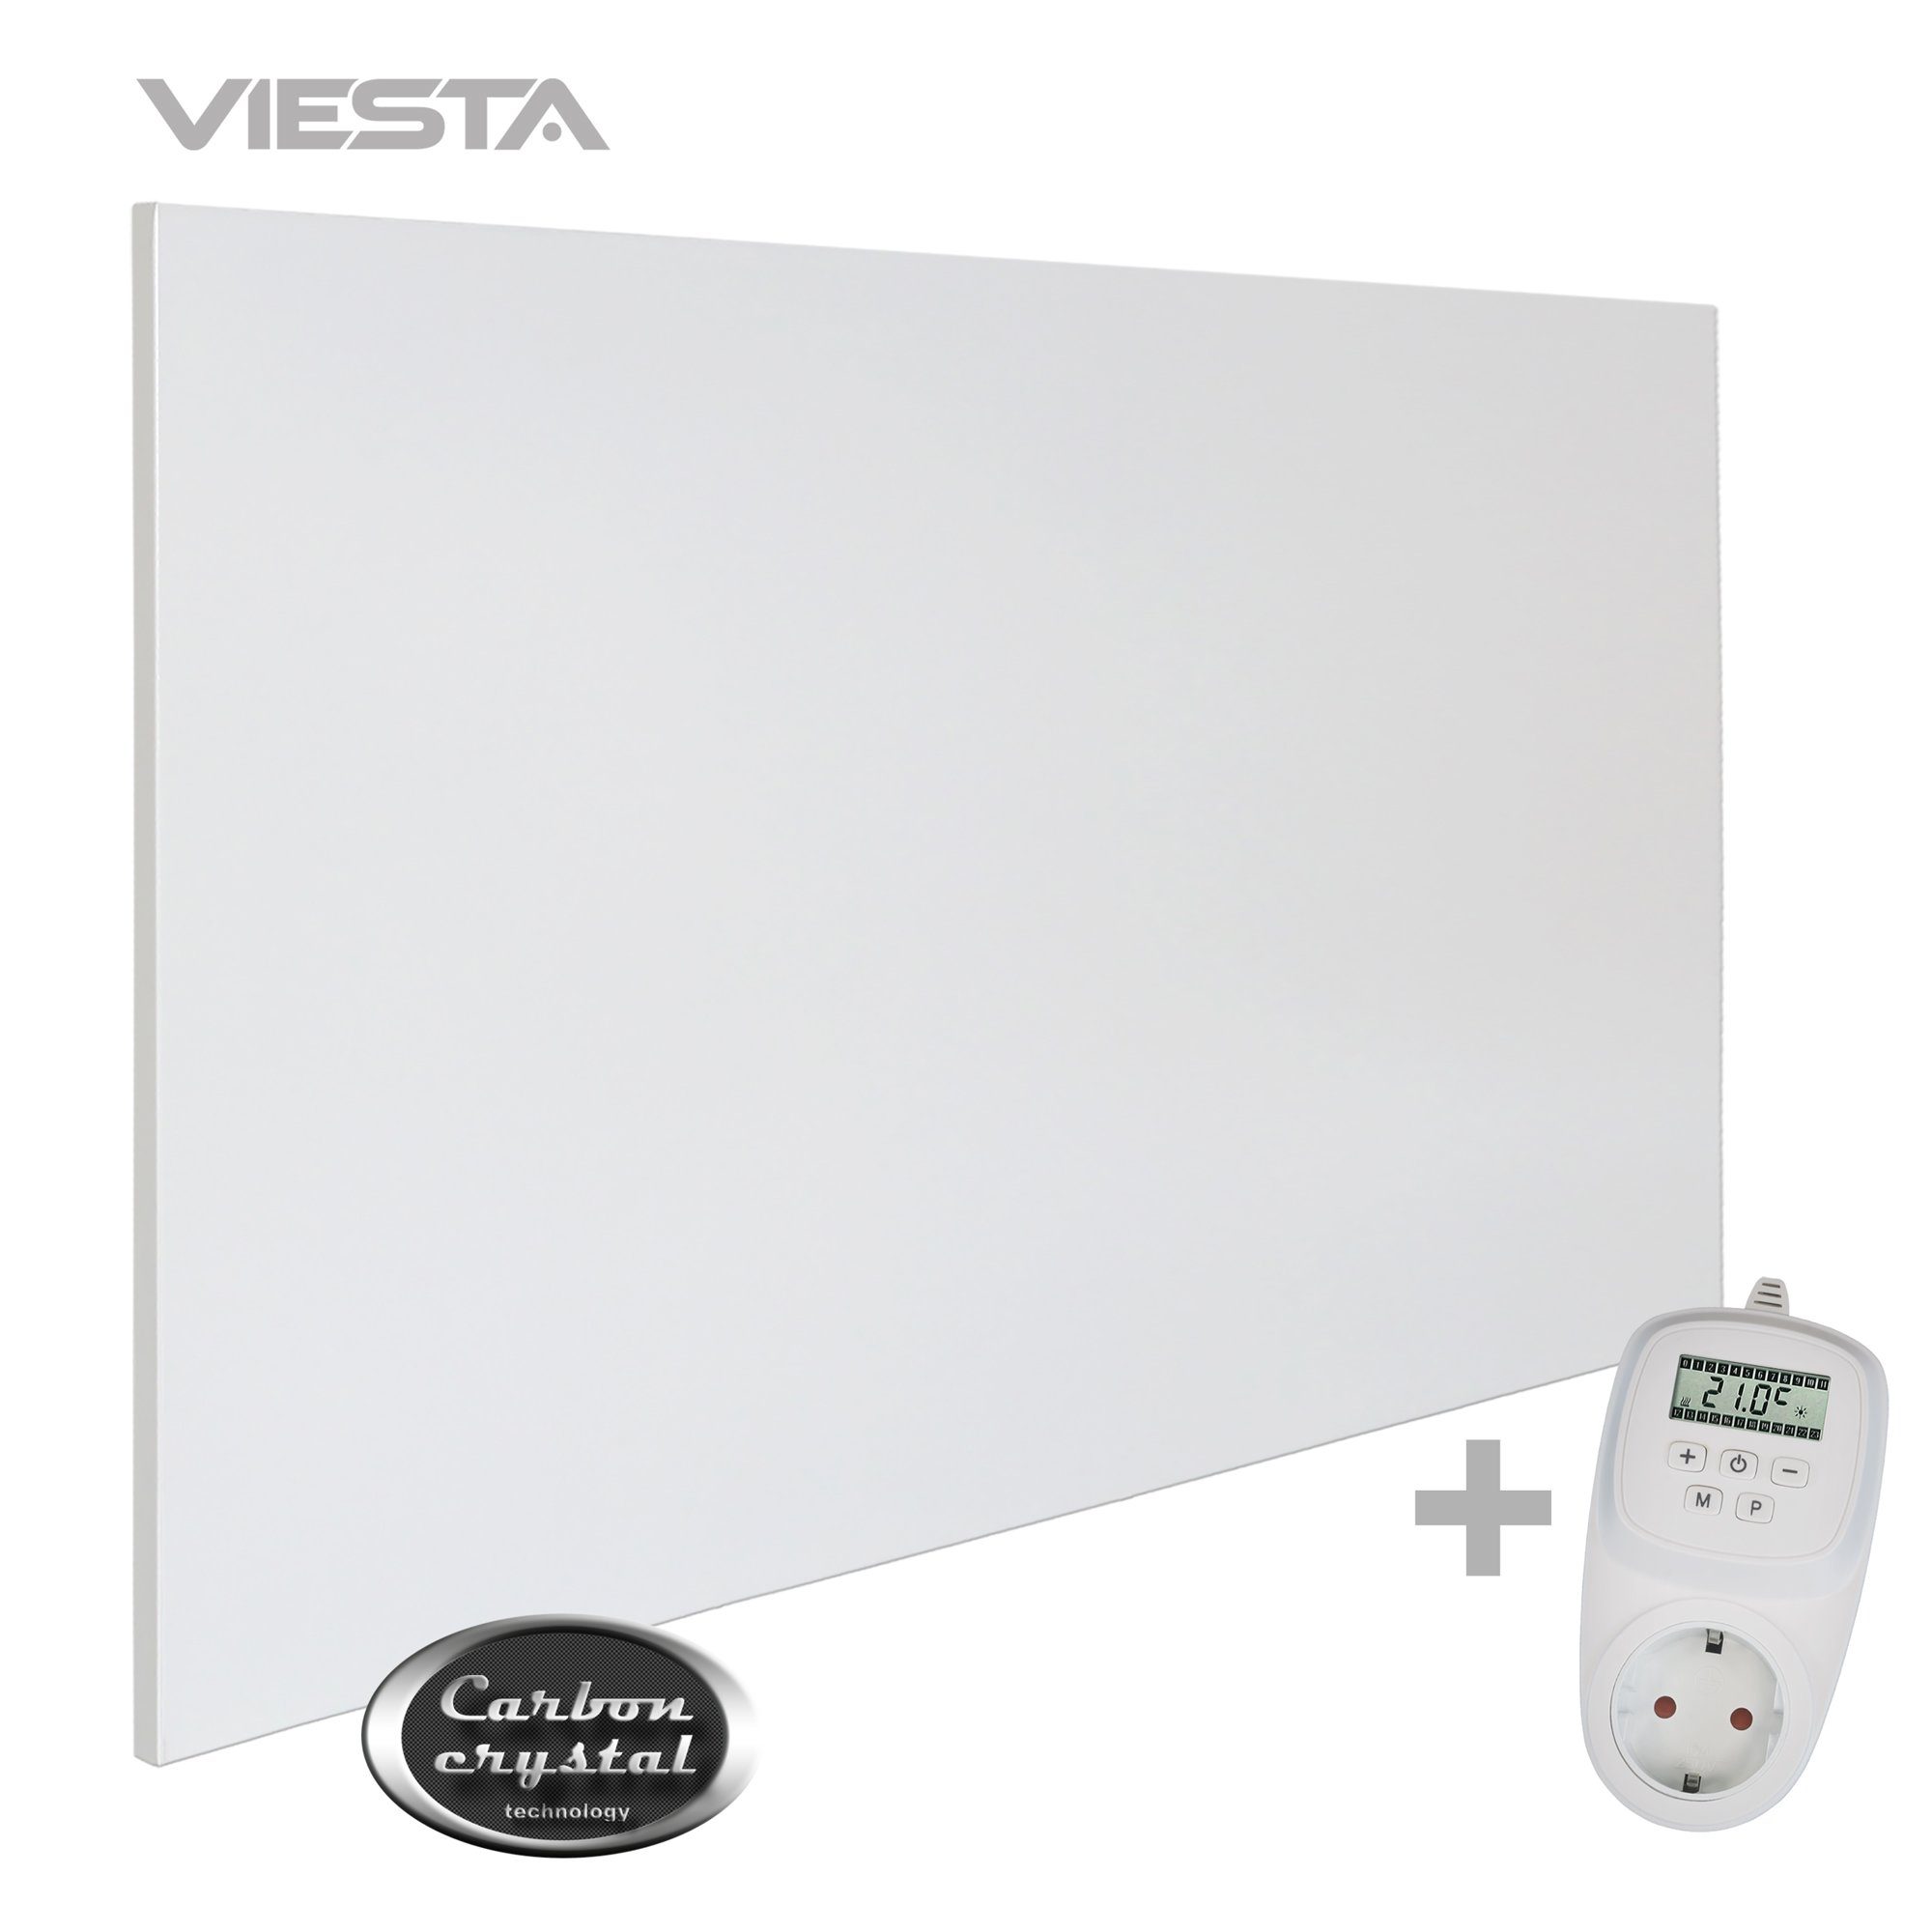 VIESTA Paneelheizkörper H900 VIESTA - ohne 900 Rahmen VIESTA Technologie), ultraflache Carbon (neueste Crystal TH12 + TH12, weiß, Thermostat H900 Watt, Wandheizung, Infrarotheizung